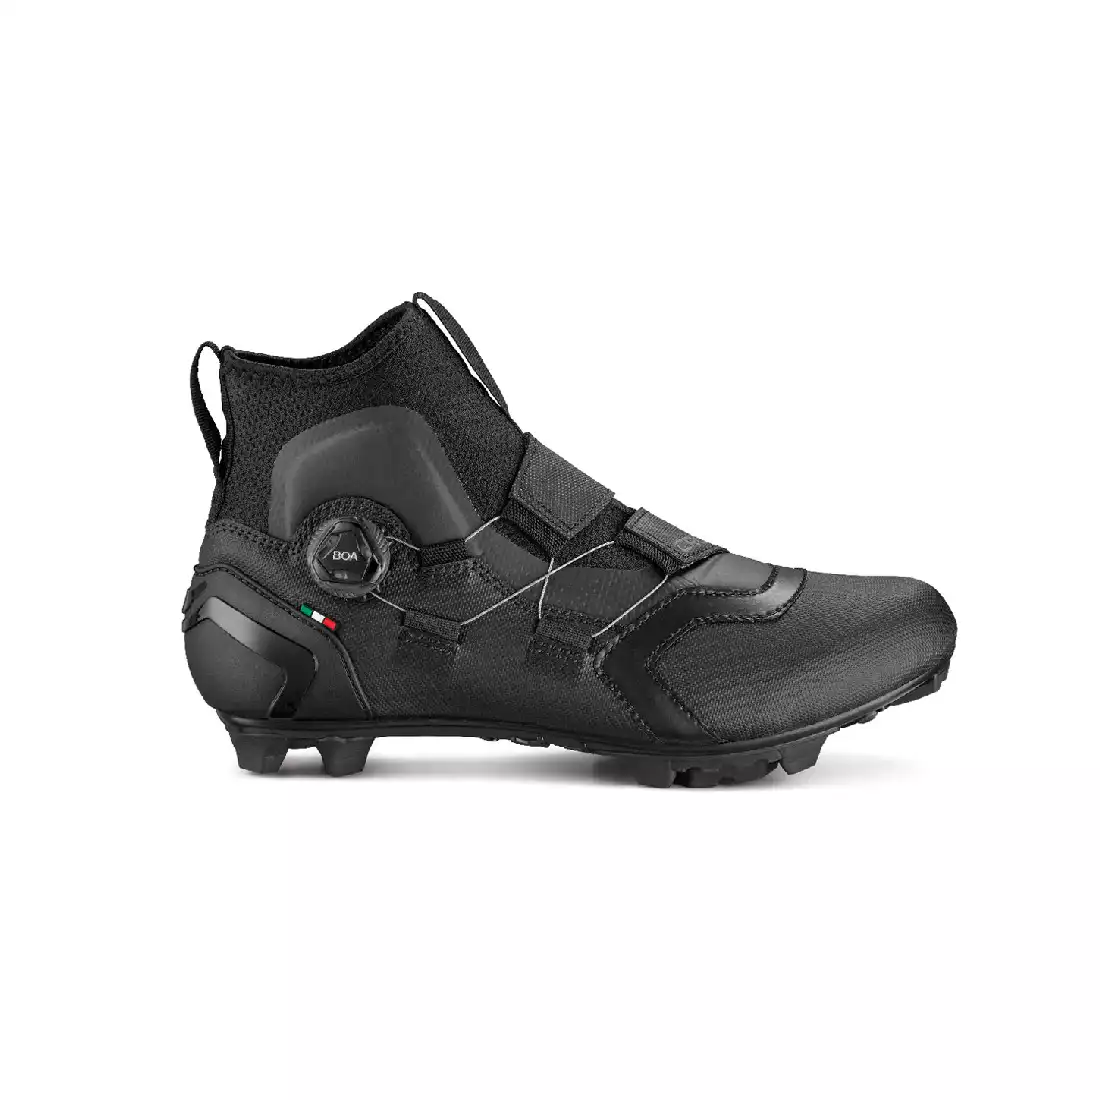 CRONO CW-1-21 Zimowe buty rowerowe MTB, nylon, czarne